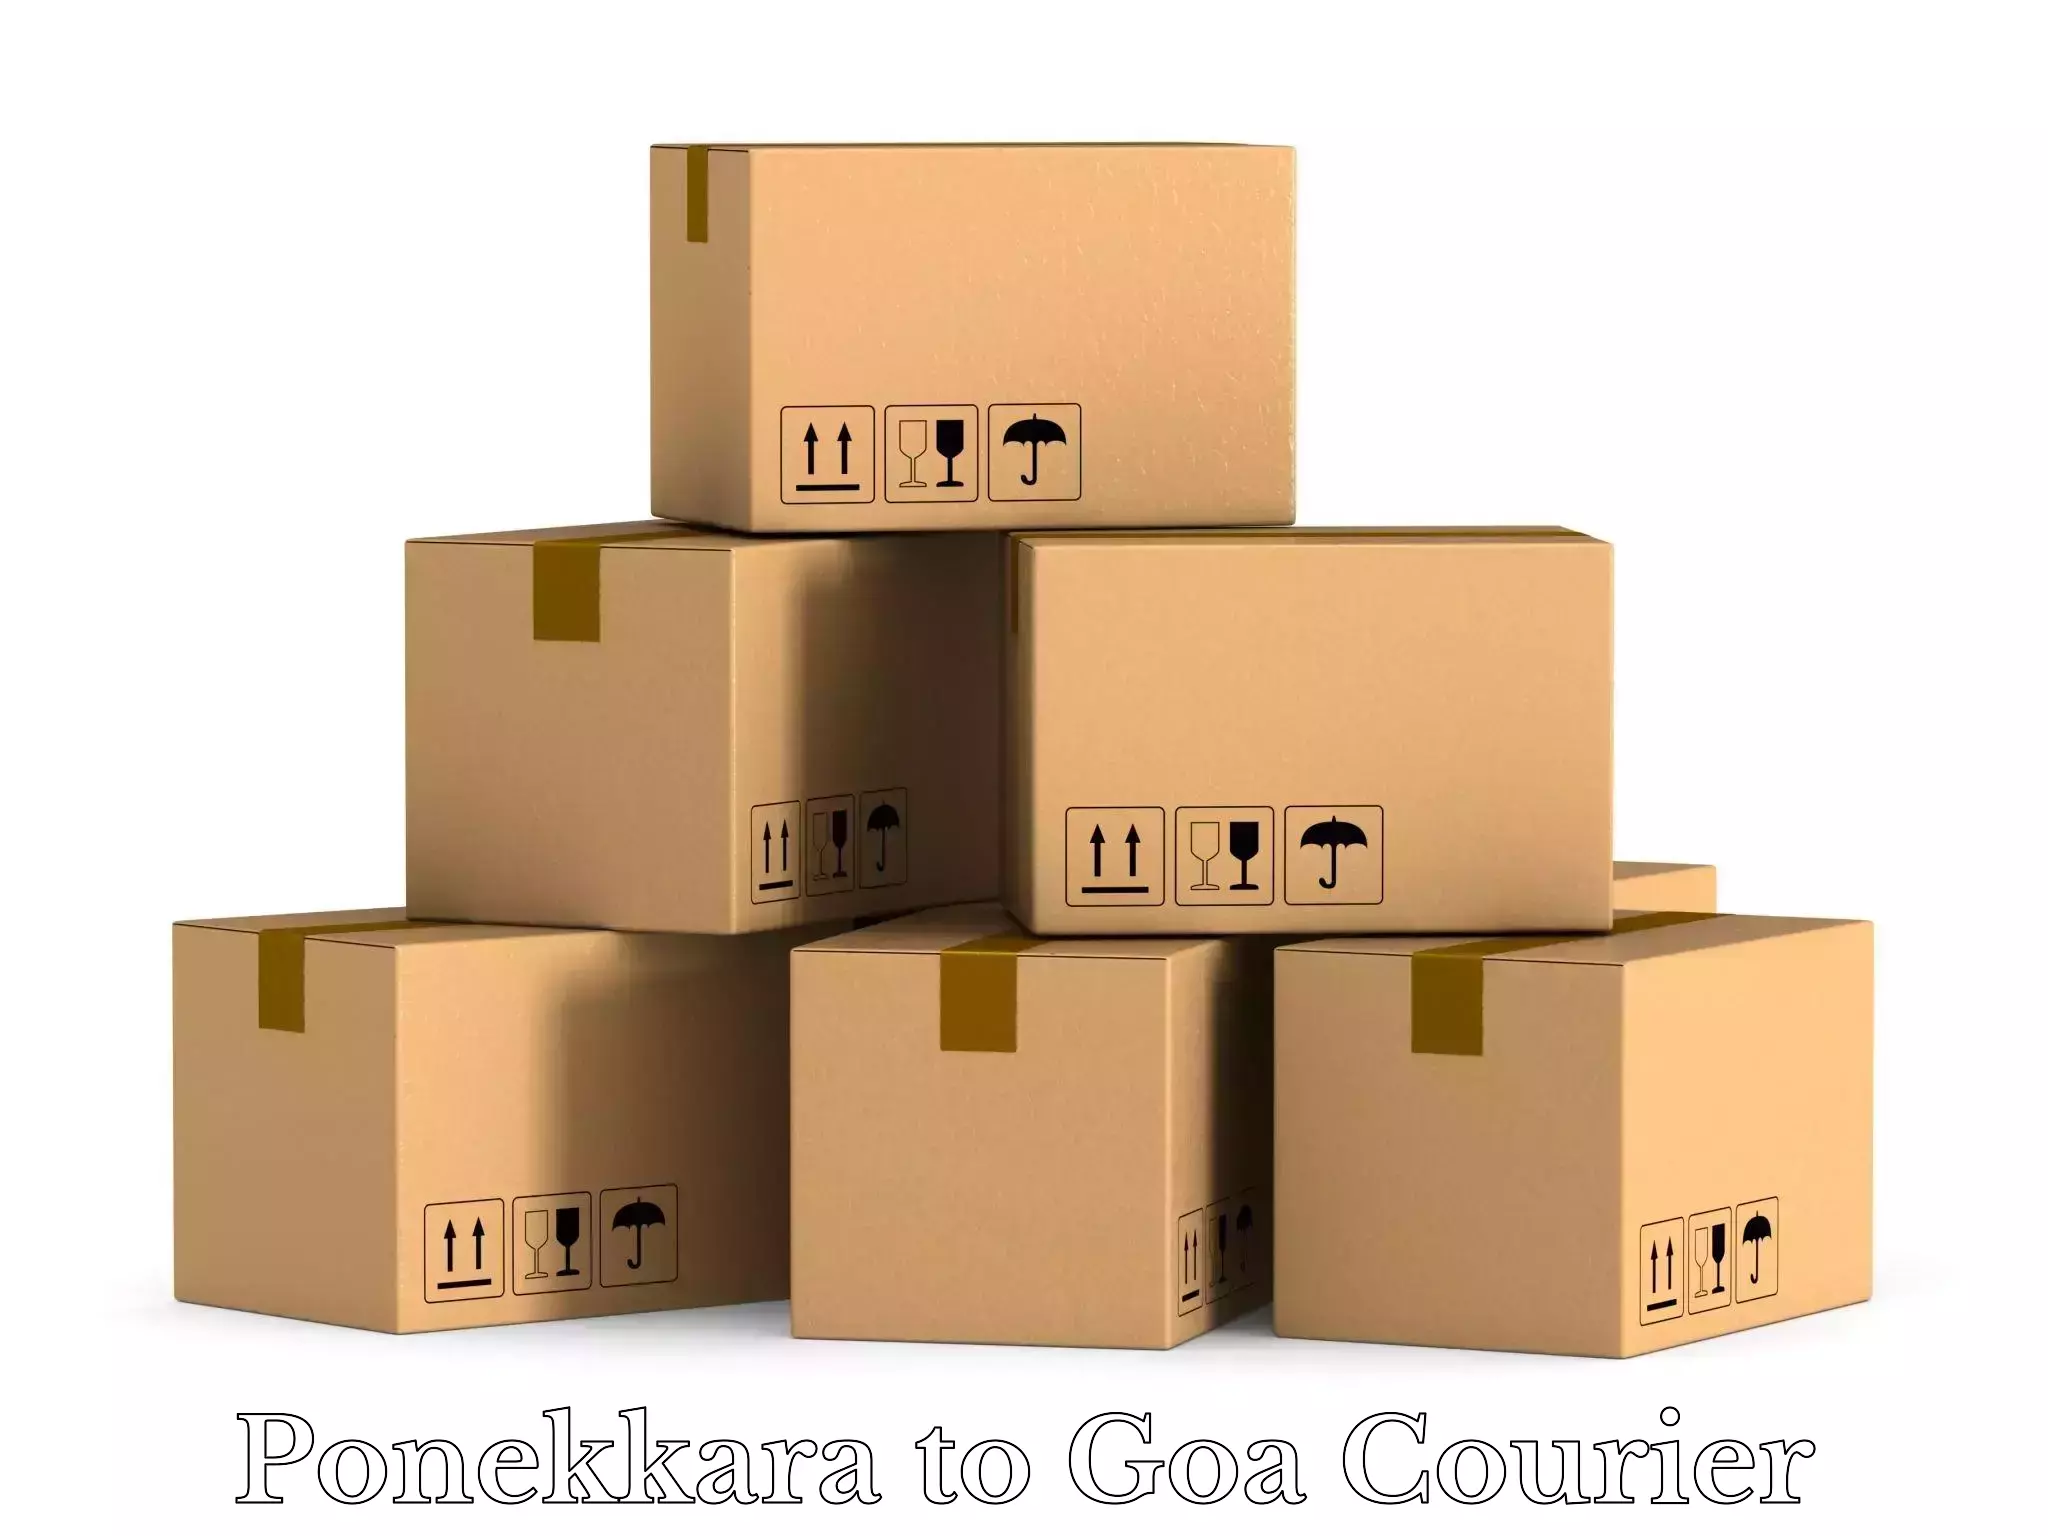 Luggage shipment tracking Ponekkara to South Goa